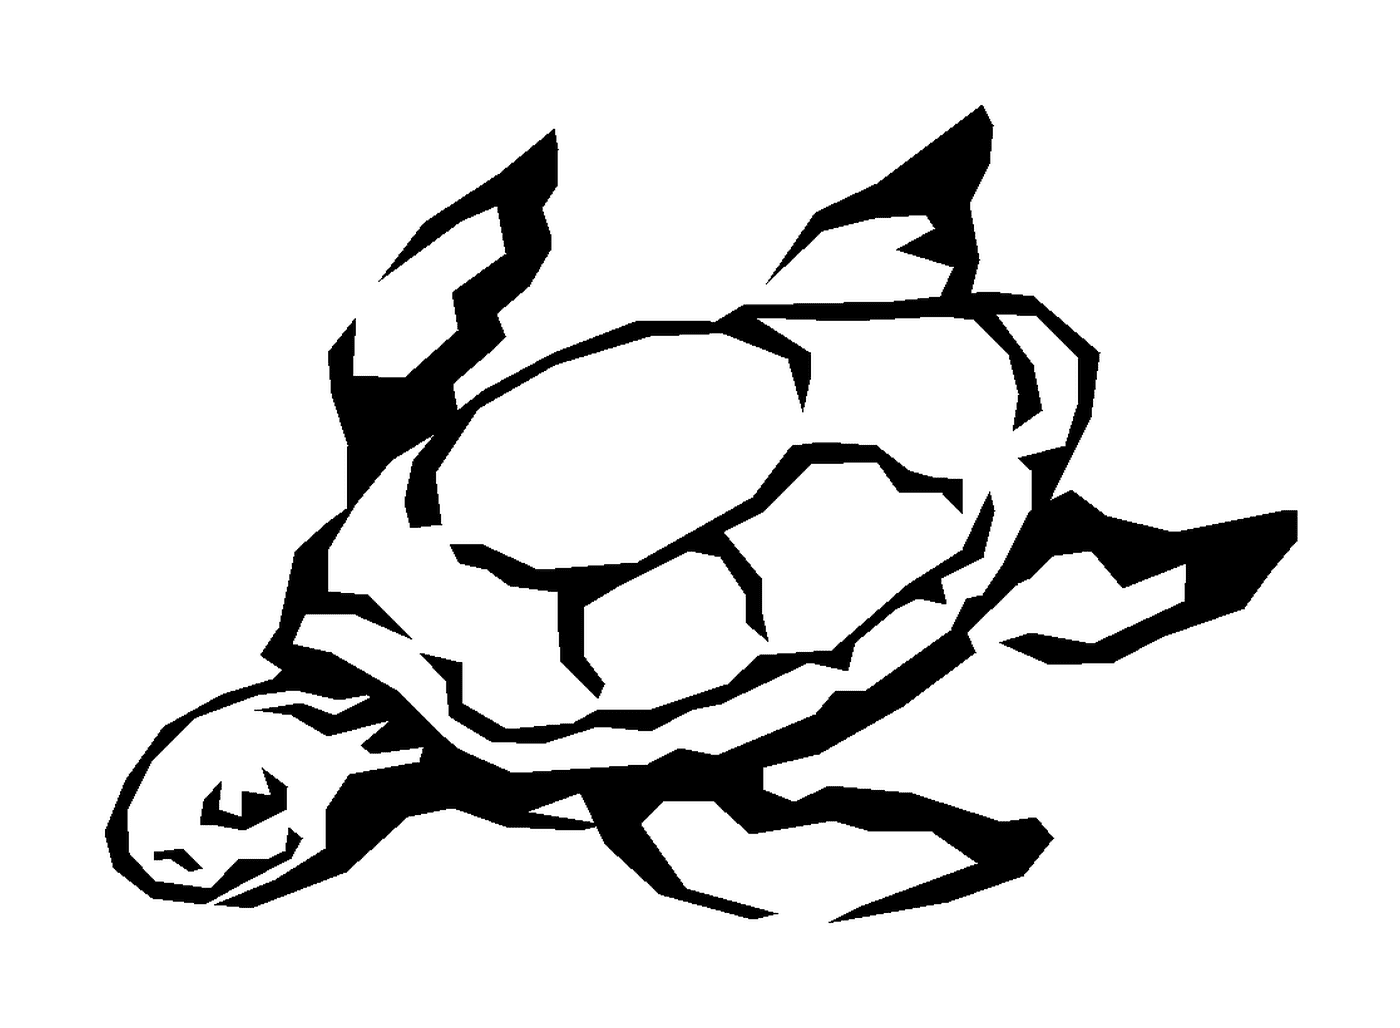  Una tartaruga marina 